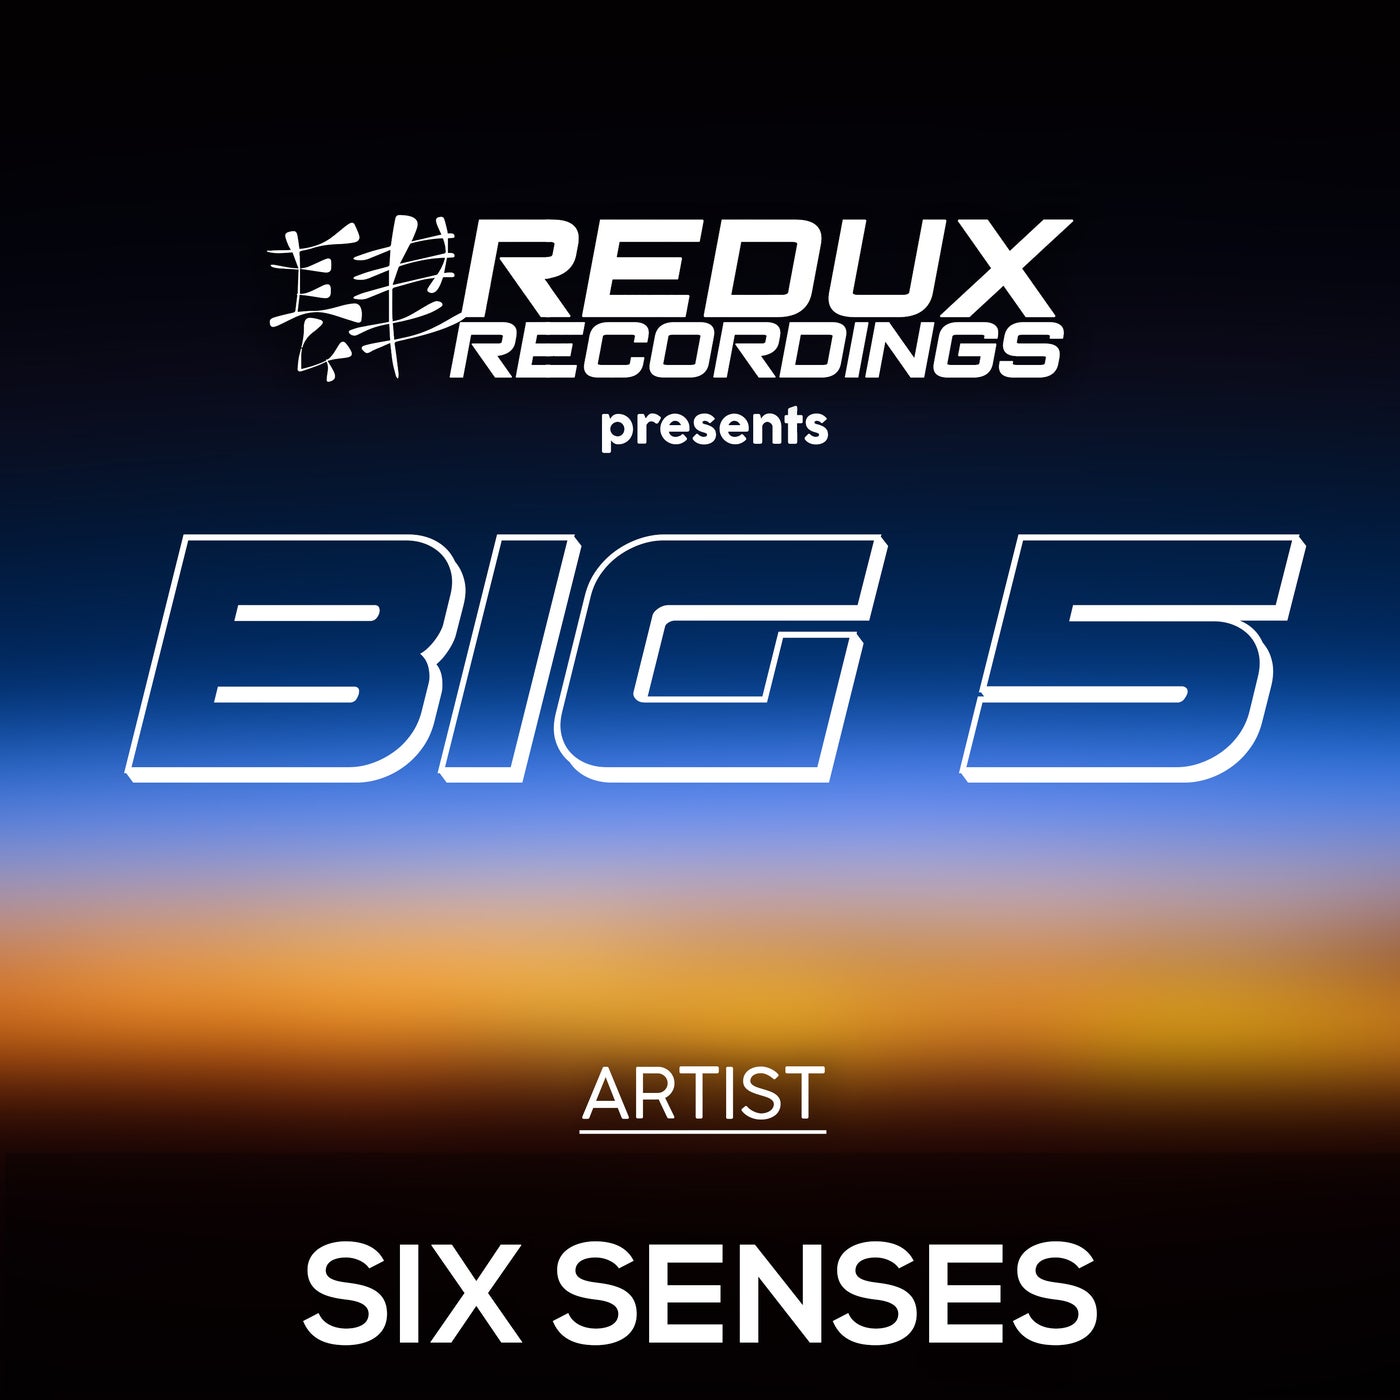 Redux Big 5 of Six Senses